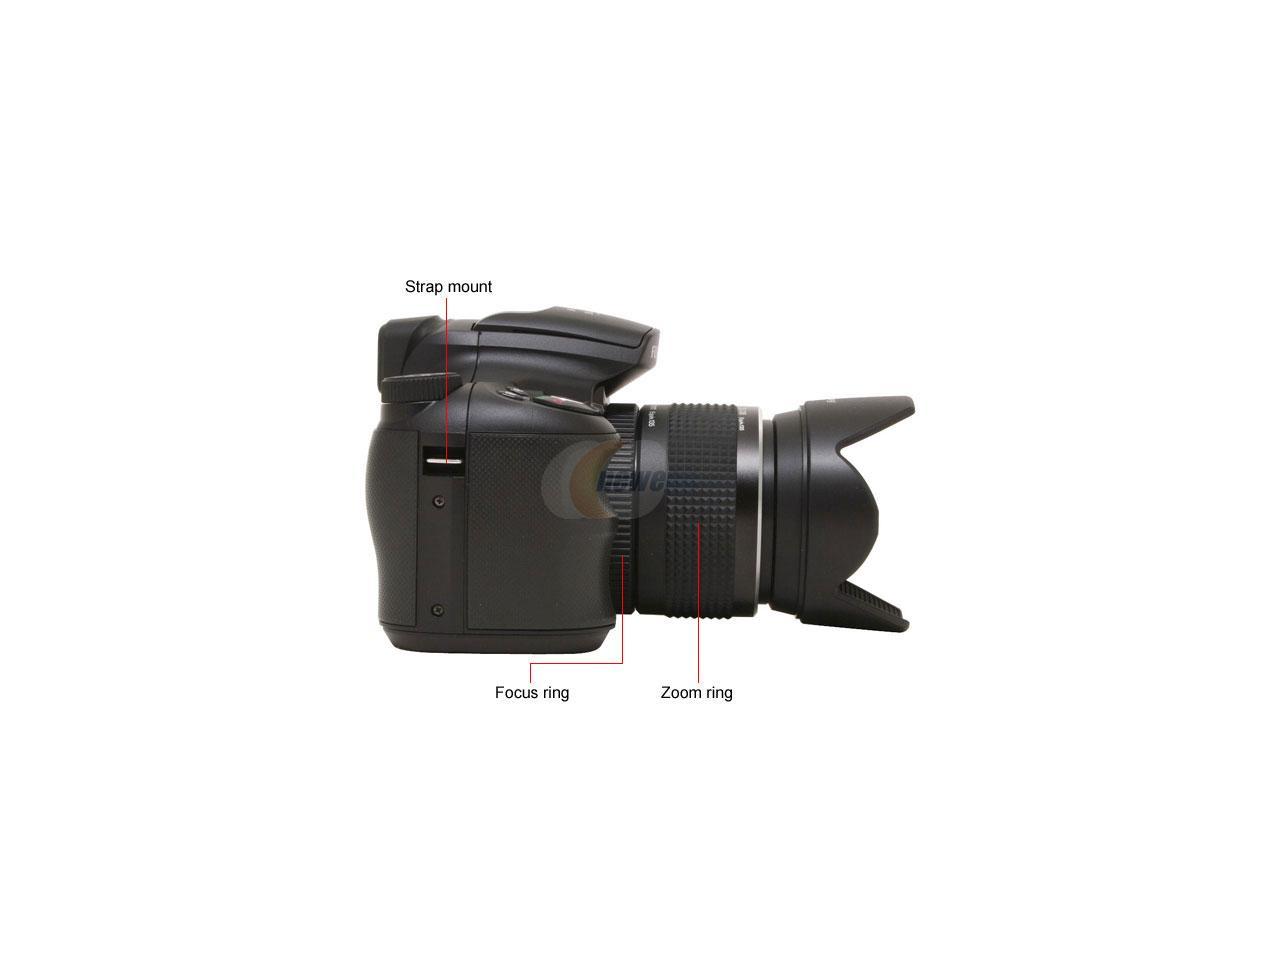 FUJIFILM FinePix S6000fd Black 6.3 MP Digital Camera - Newegg.com